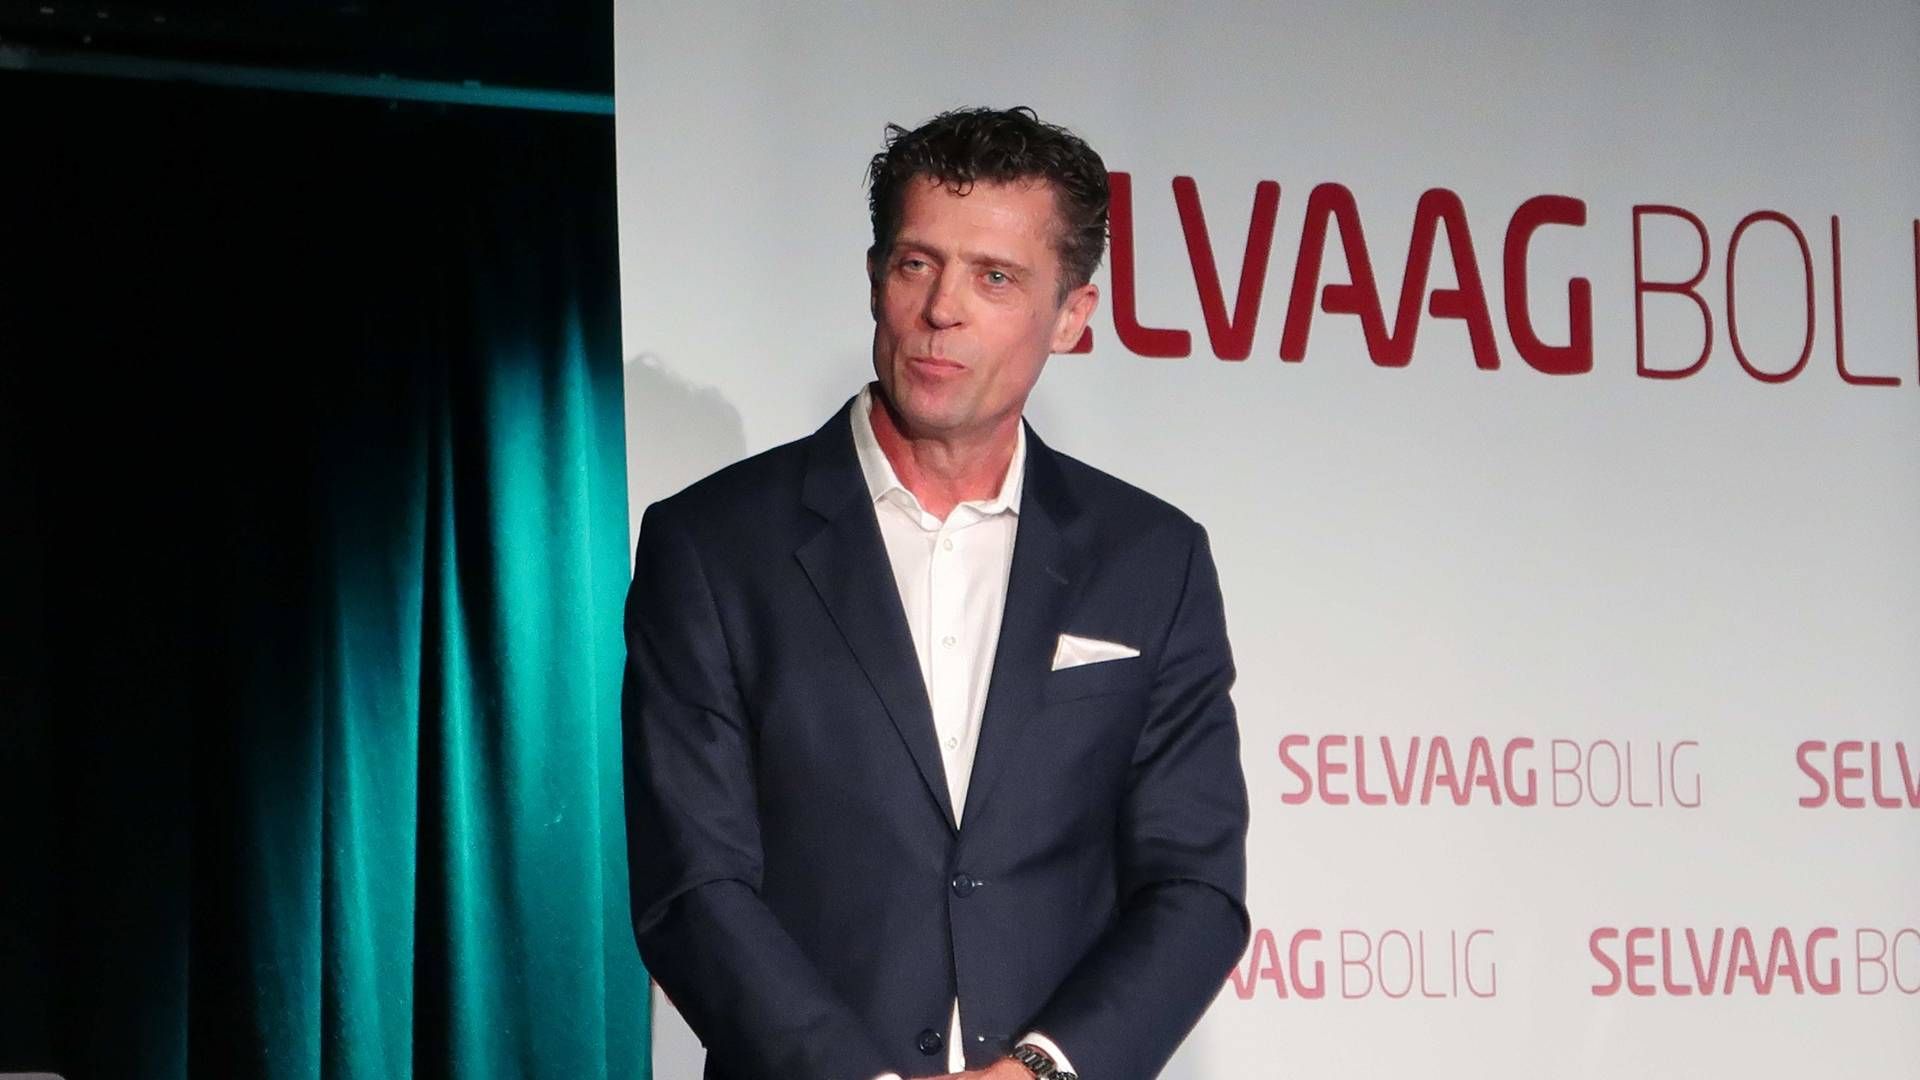 LEVERER SVAKERE TALL: administrerende direktør Sverre Molvik i Selvaag Bolig | Foto: Øystein Byberg